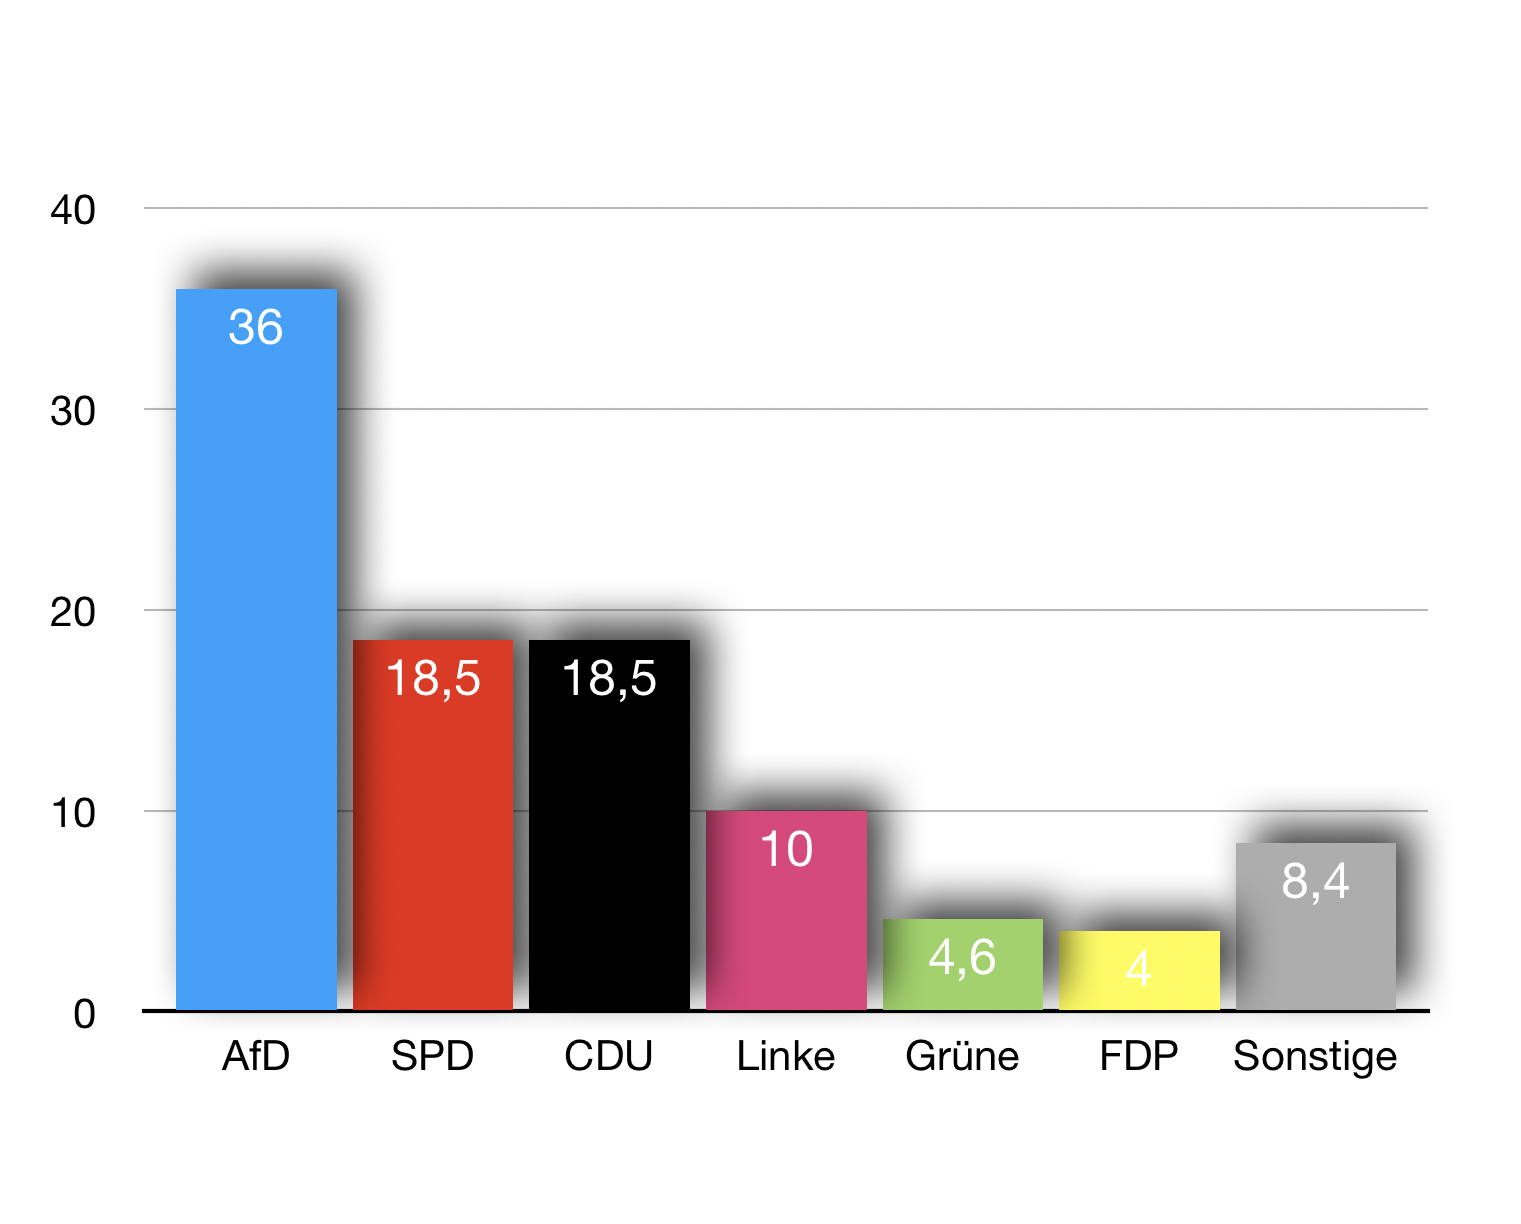 AfD MV bei 36%: Bald 51% der Sitze?